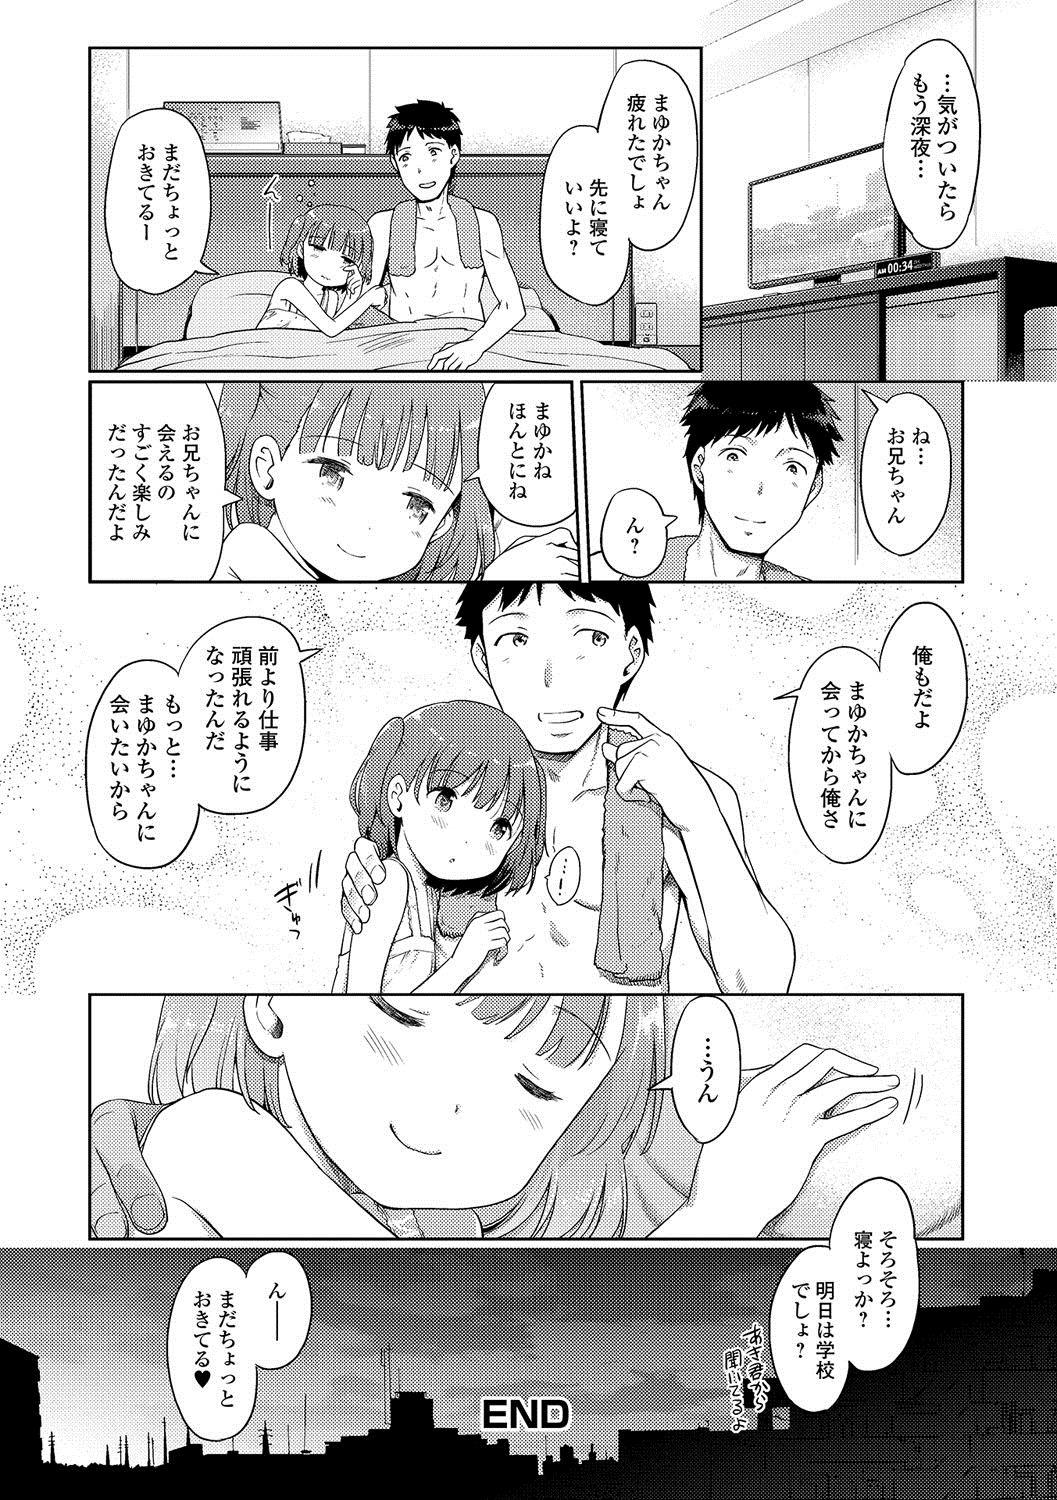 [Kiya Shii] Awa no Ohime-sama # 4 Mayuka-chan to Tengai Date (Digital Puni Pedo! Vol. 04) [Digital] 16